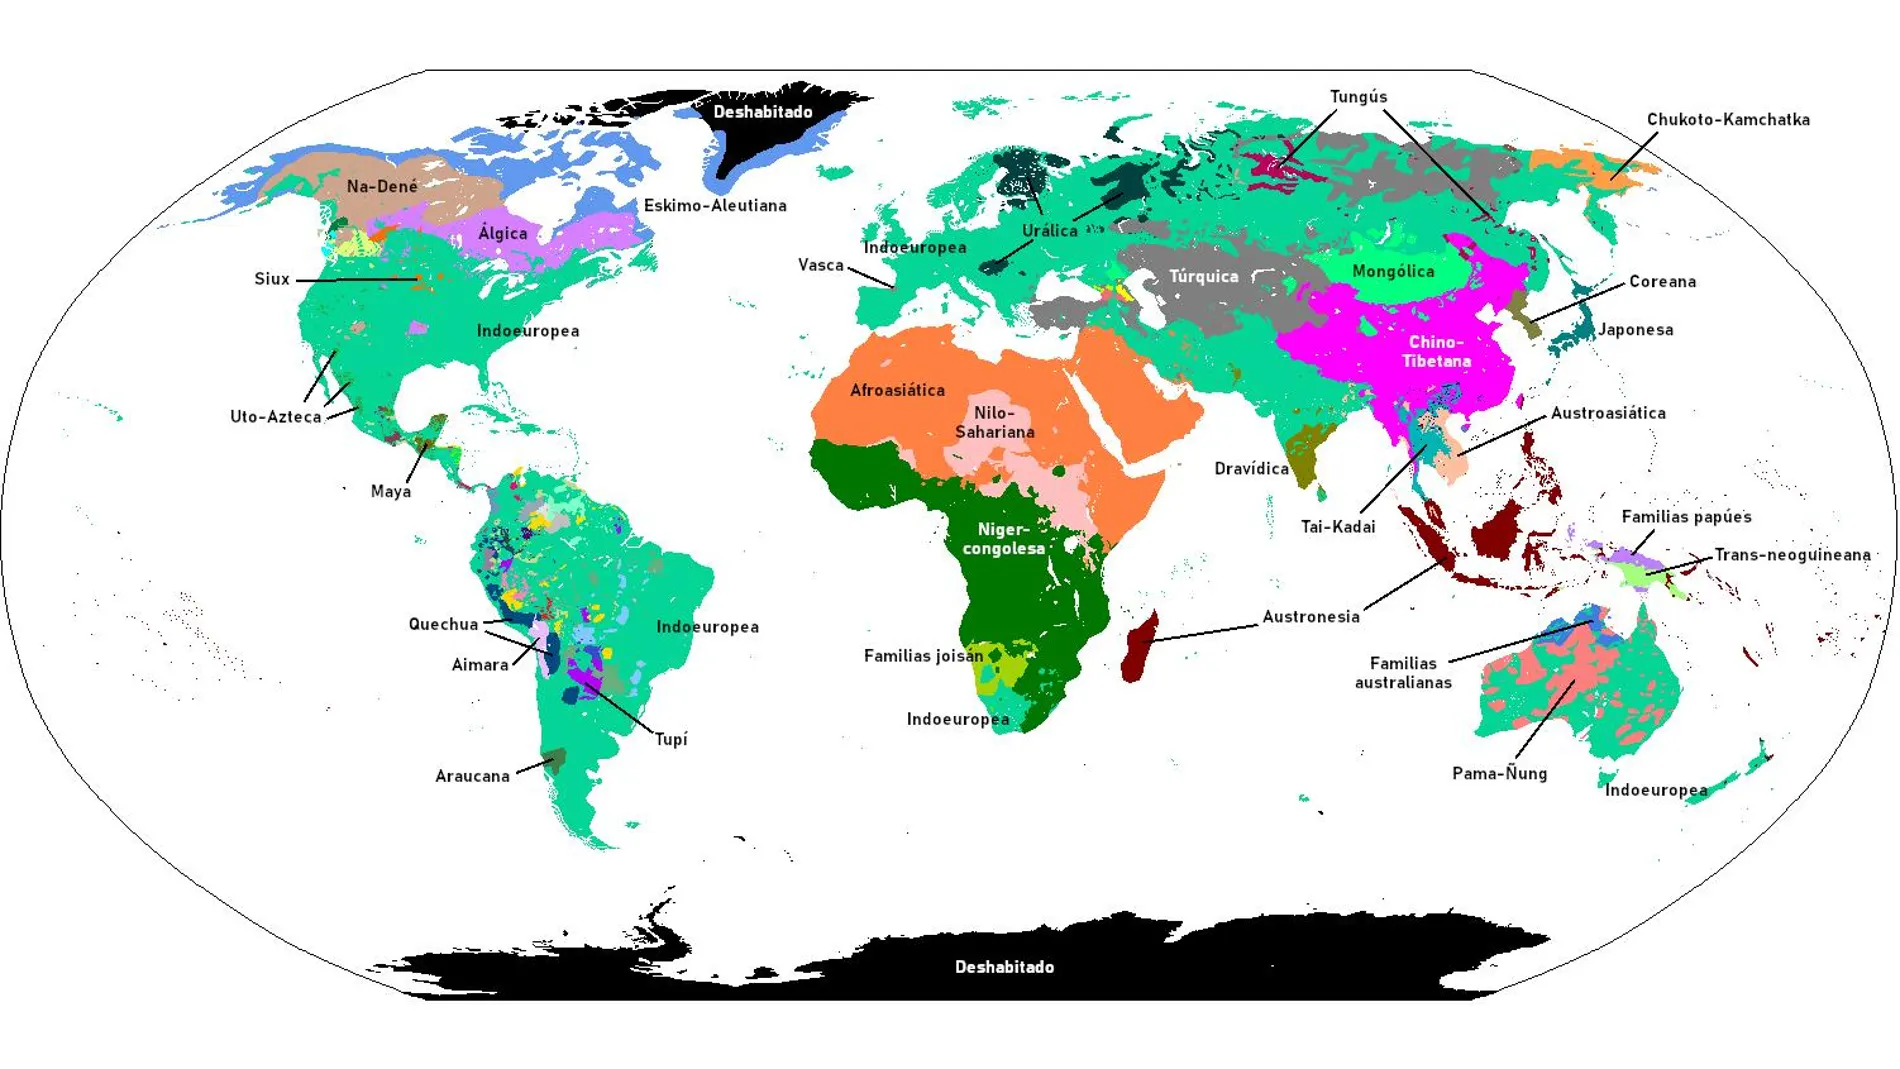 Las principales familias lingüísticas del mundo y su distribución geográfica aproximada. Cada color representa una familia, salvo para las familias australianas, papúes y joisán, que son en realidad grupos de familias que se han agrupado tradicionalmente bajo un mismo paraguas.